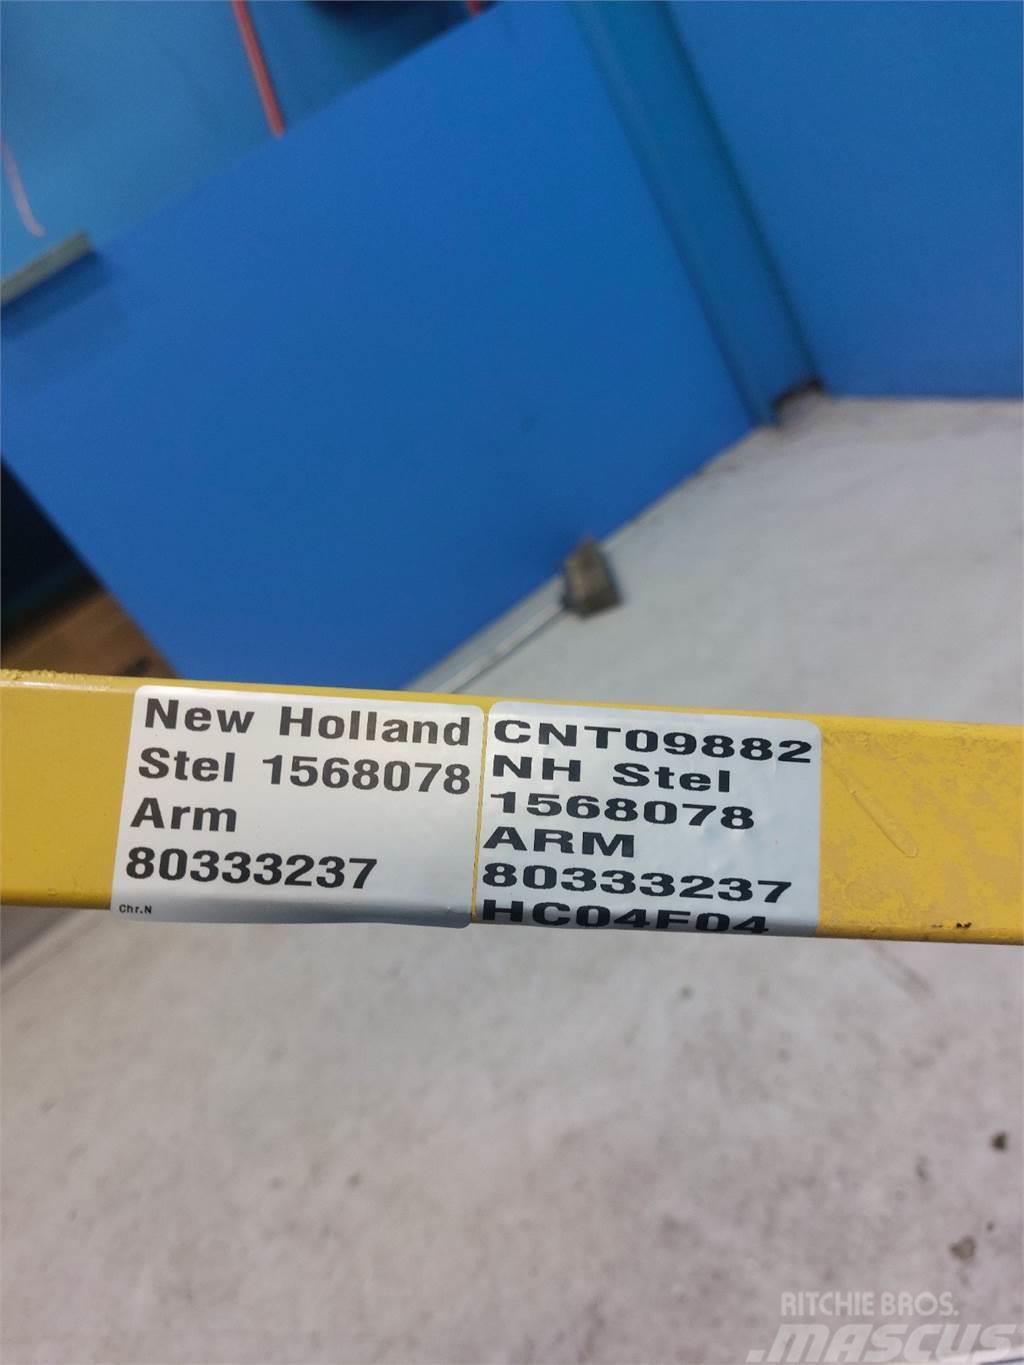 New Holland 8070 Příslušenství a náhradní díly ke kombajnům